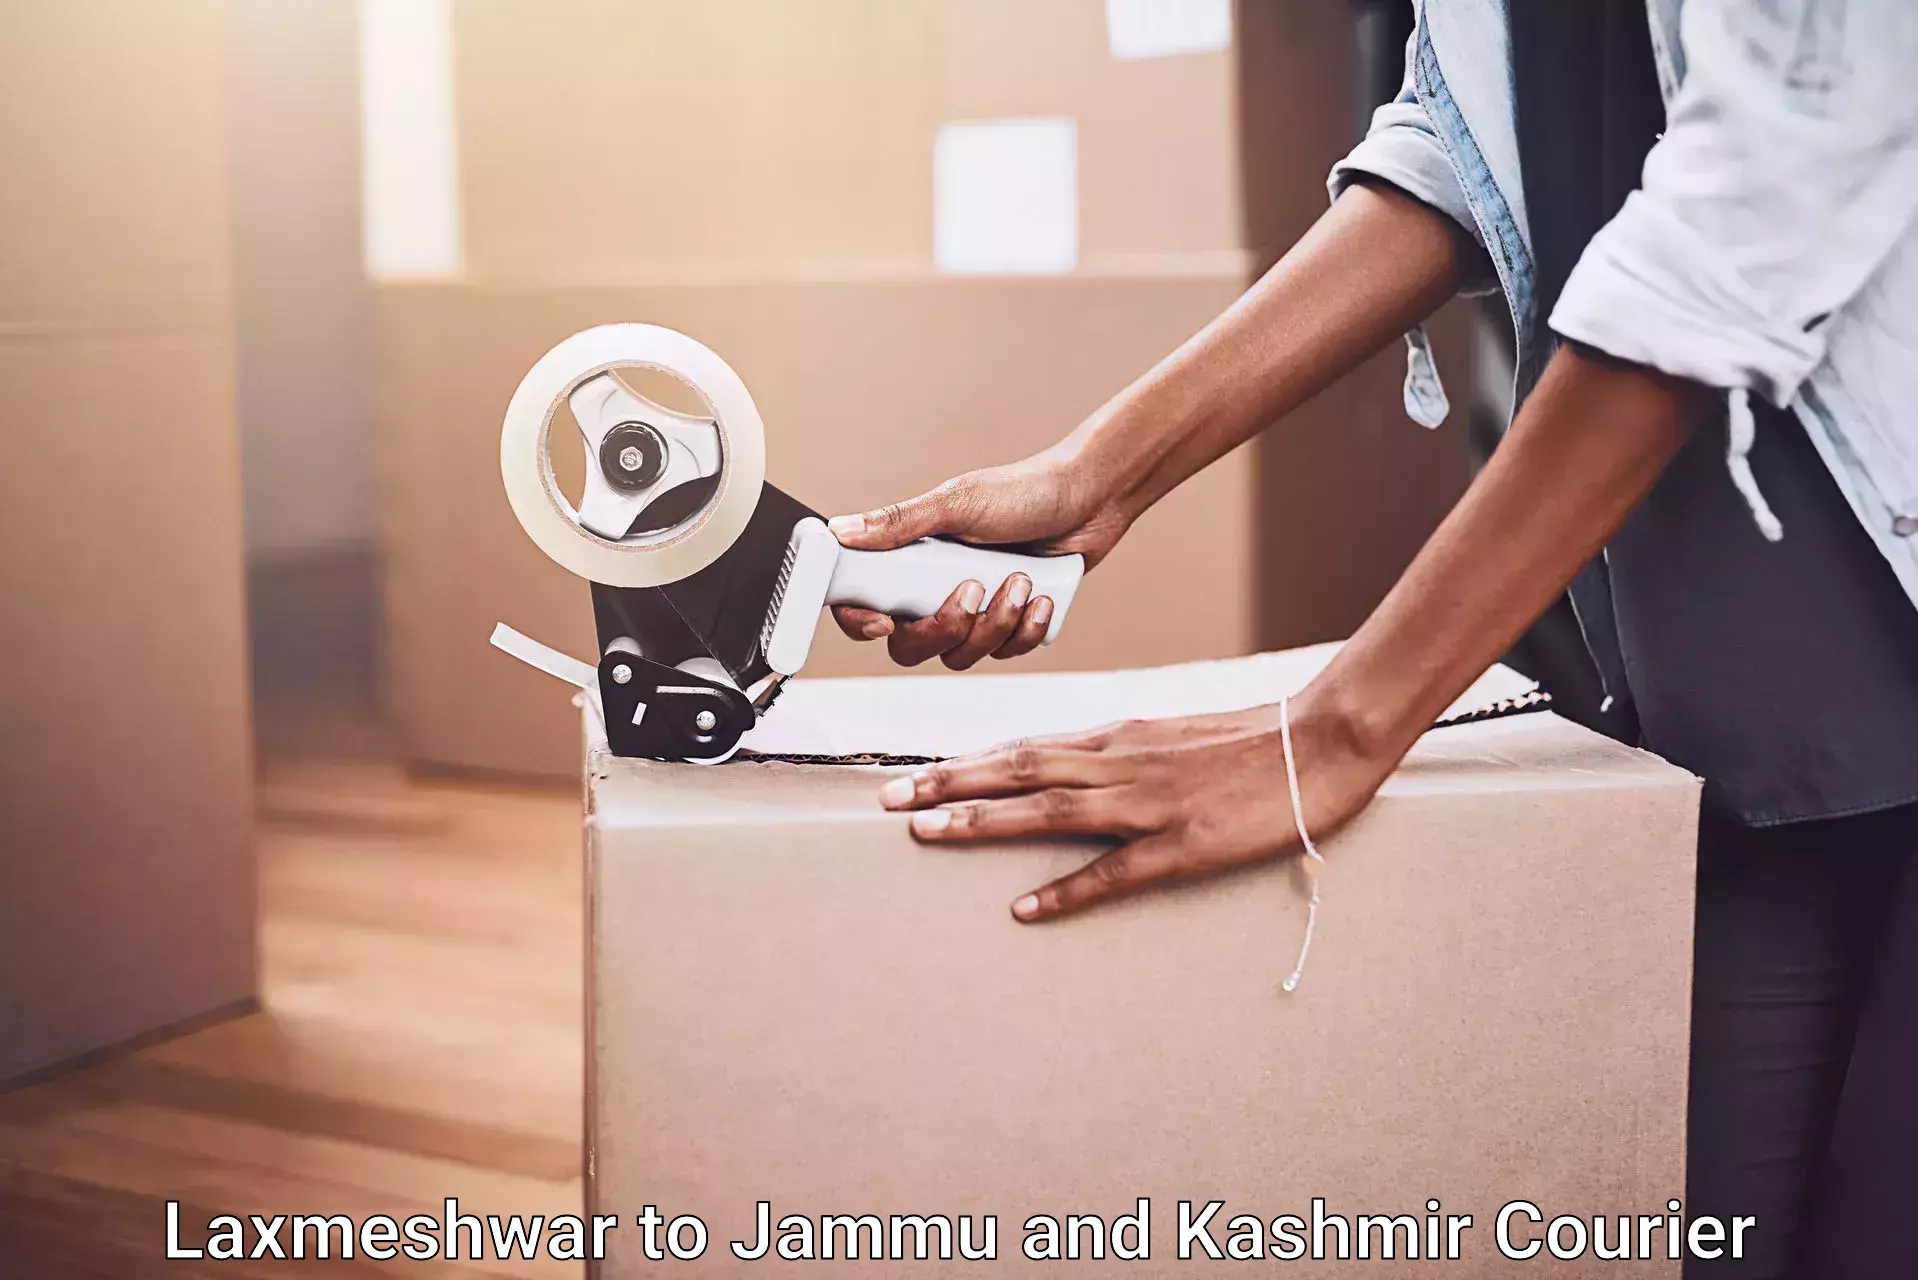 Furniture moving strategies Laxmeshwar to University of Jammu